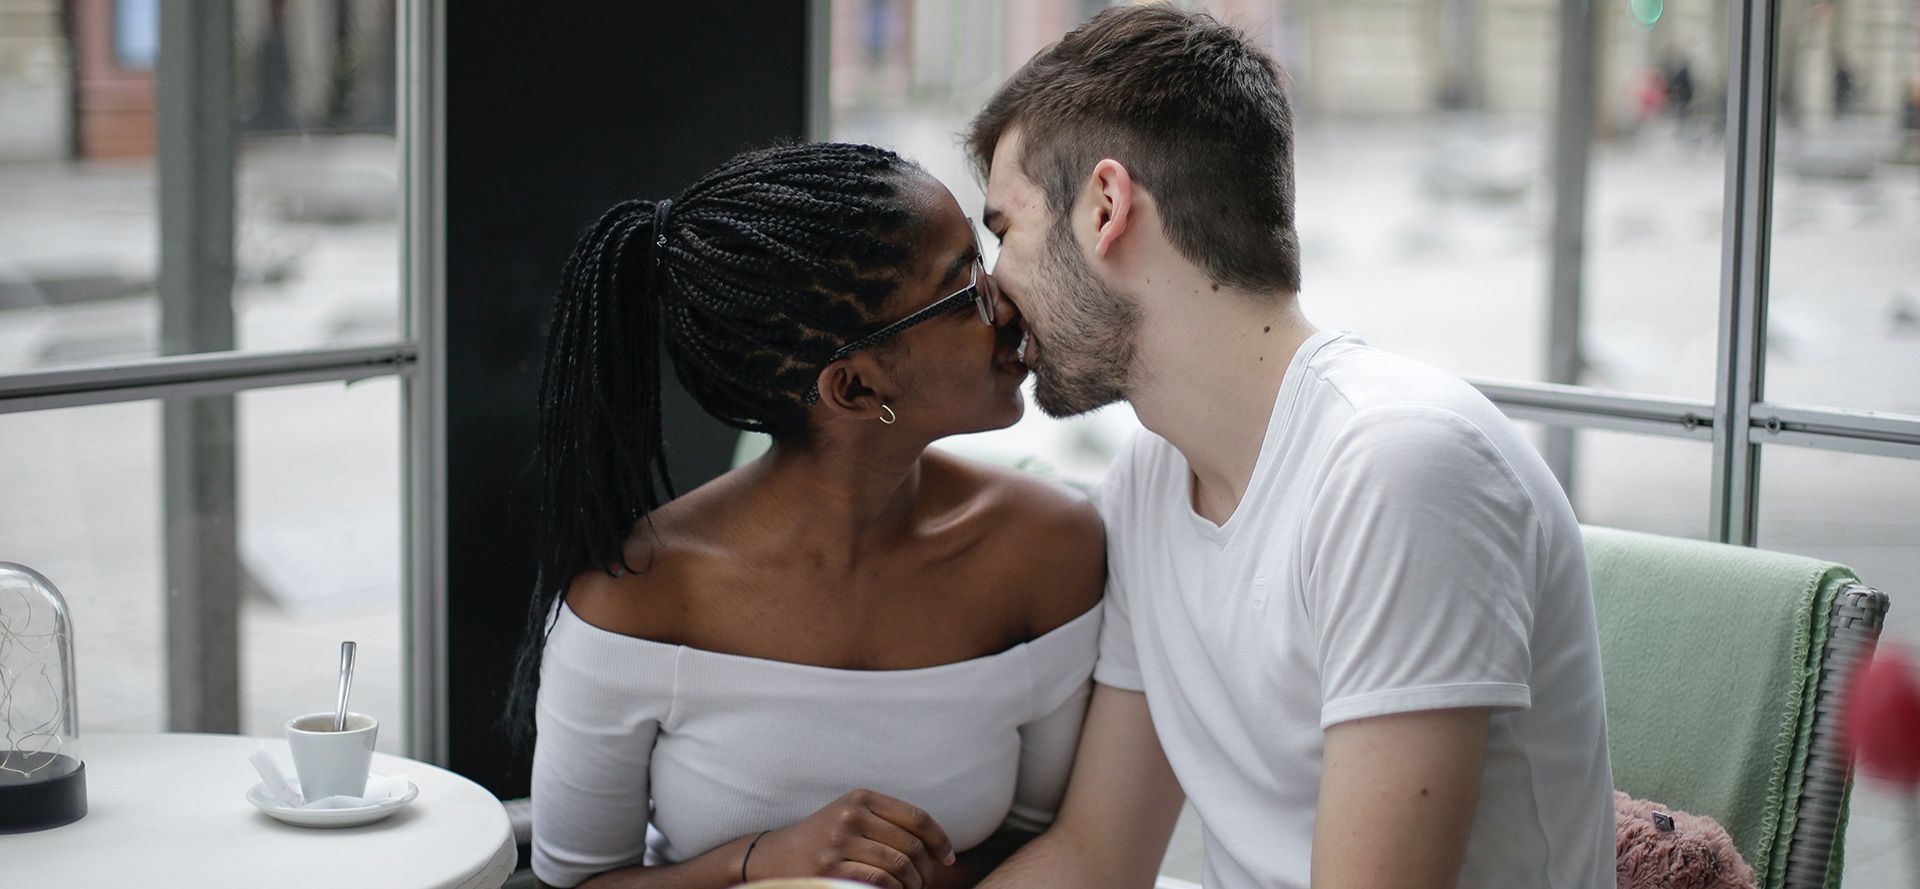 Et internationalt par kysser hinanden på en café.